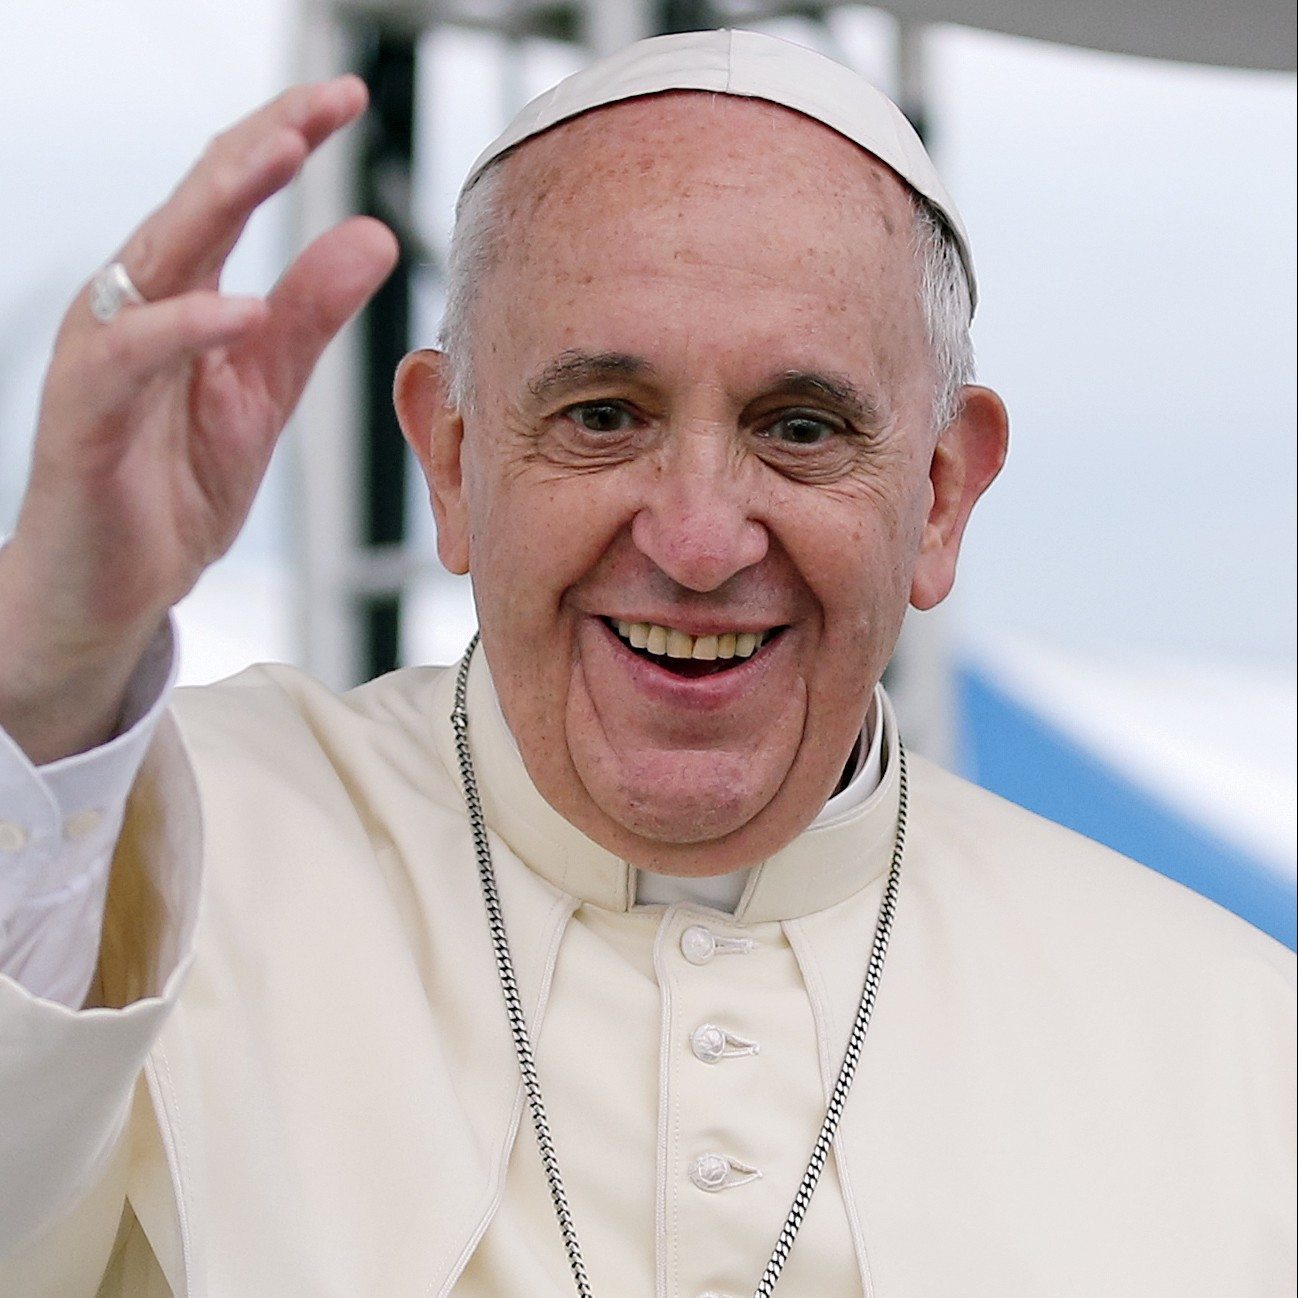 Pope Francis - Greenpeace USA